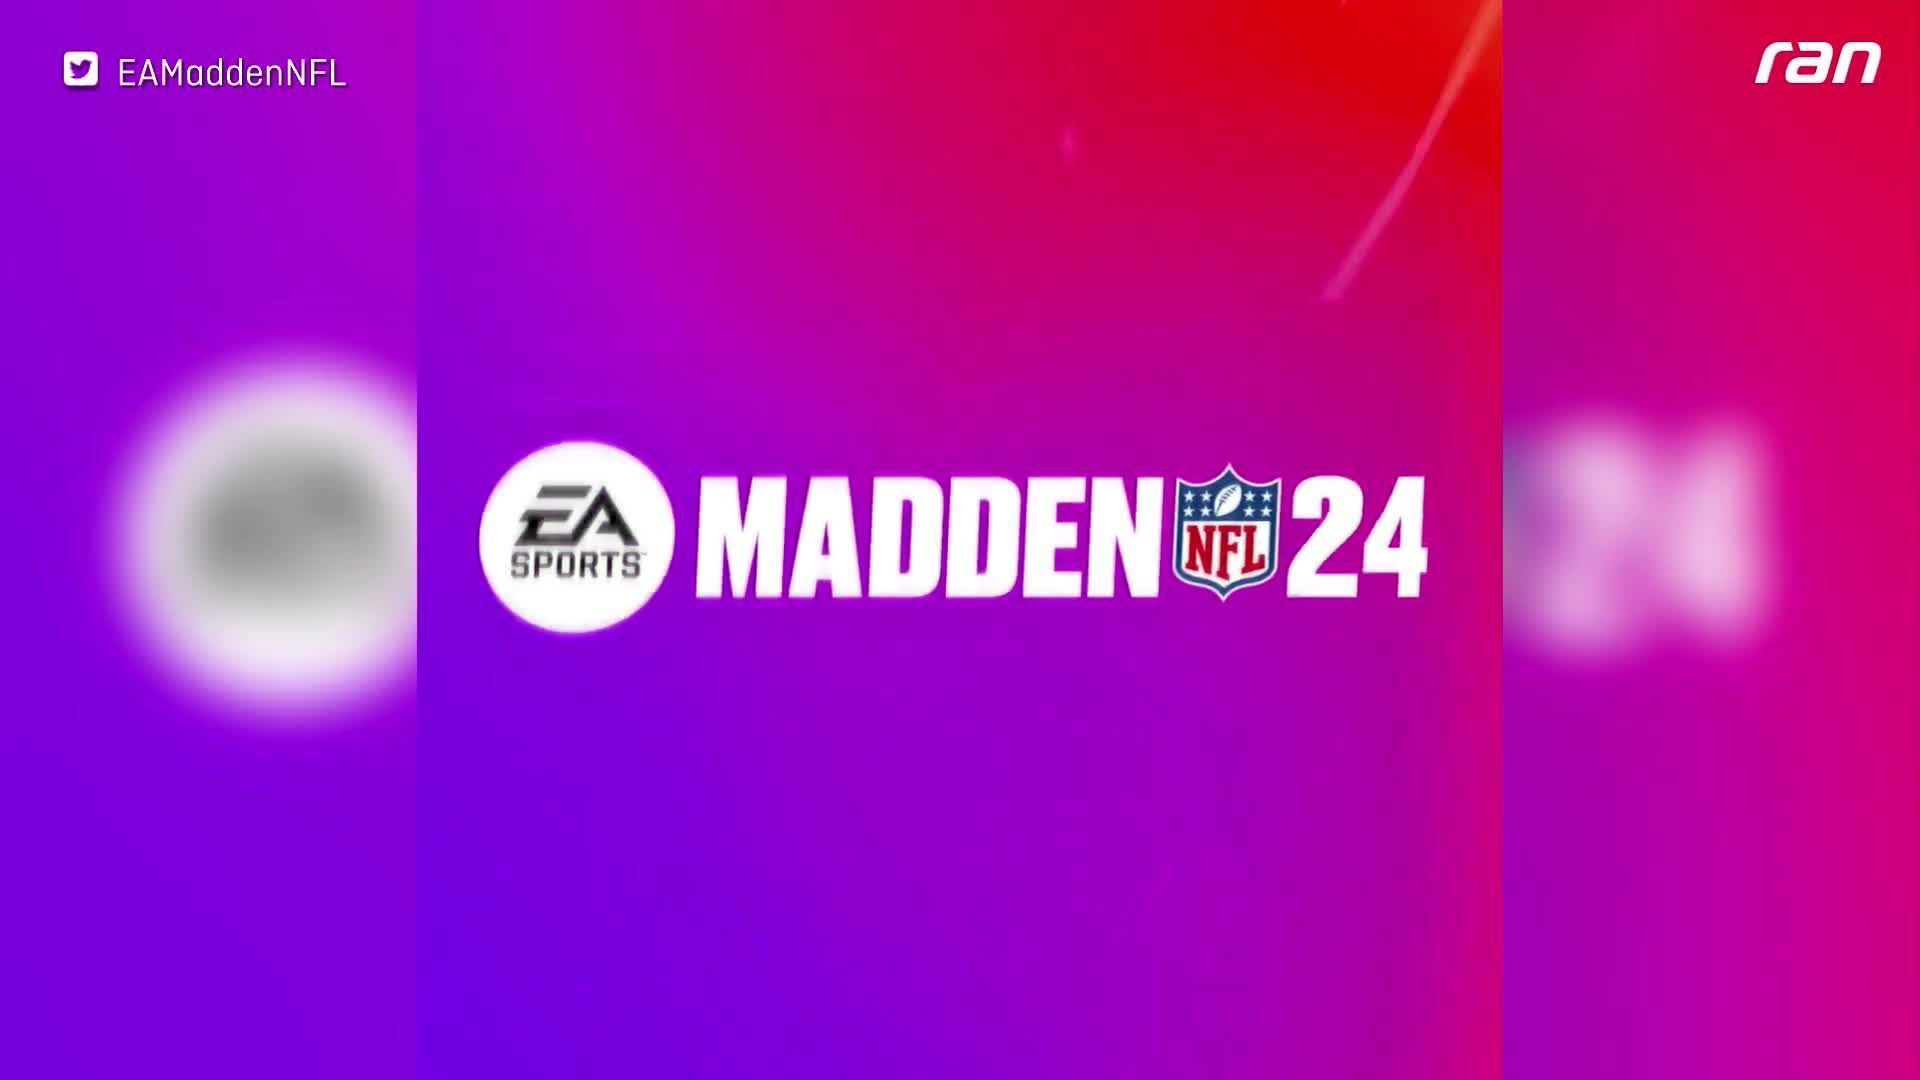 Madden NFL 24 enthüllt im neuen Trailer erste Einblicke ins neue Game